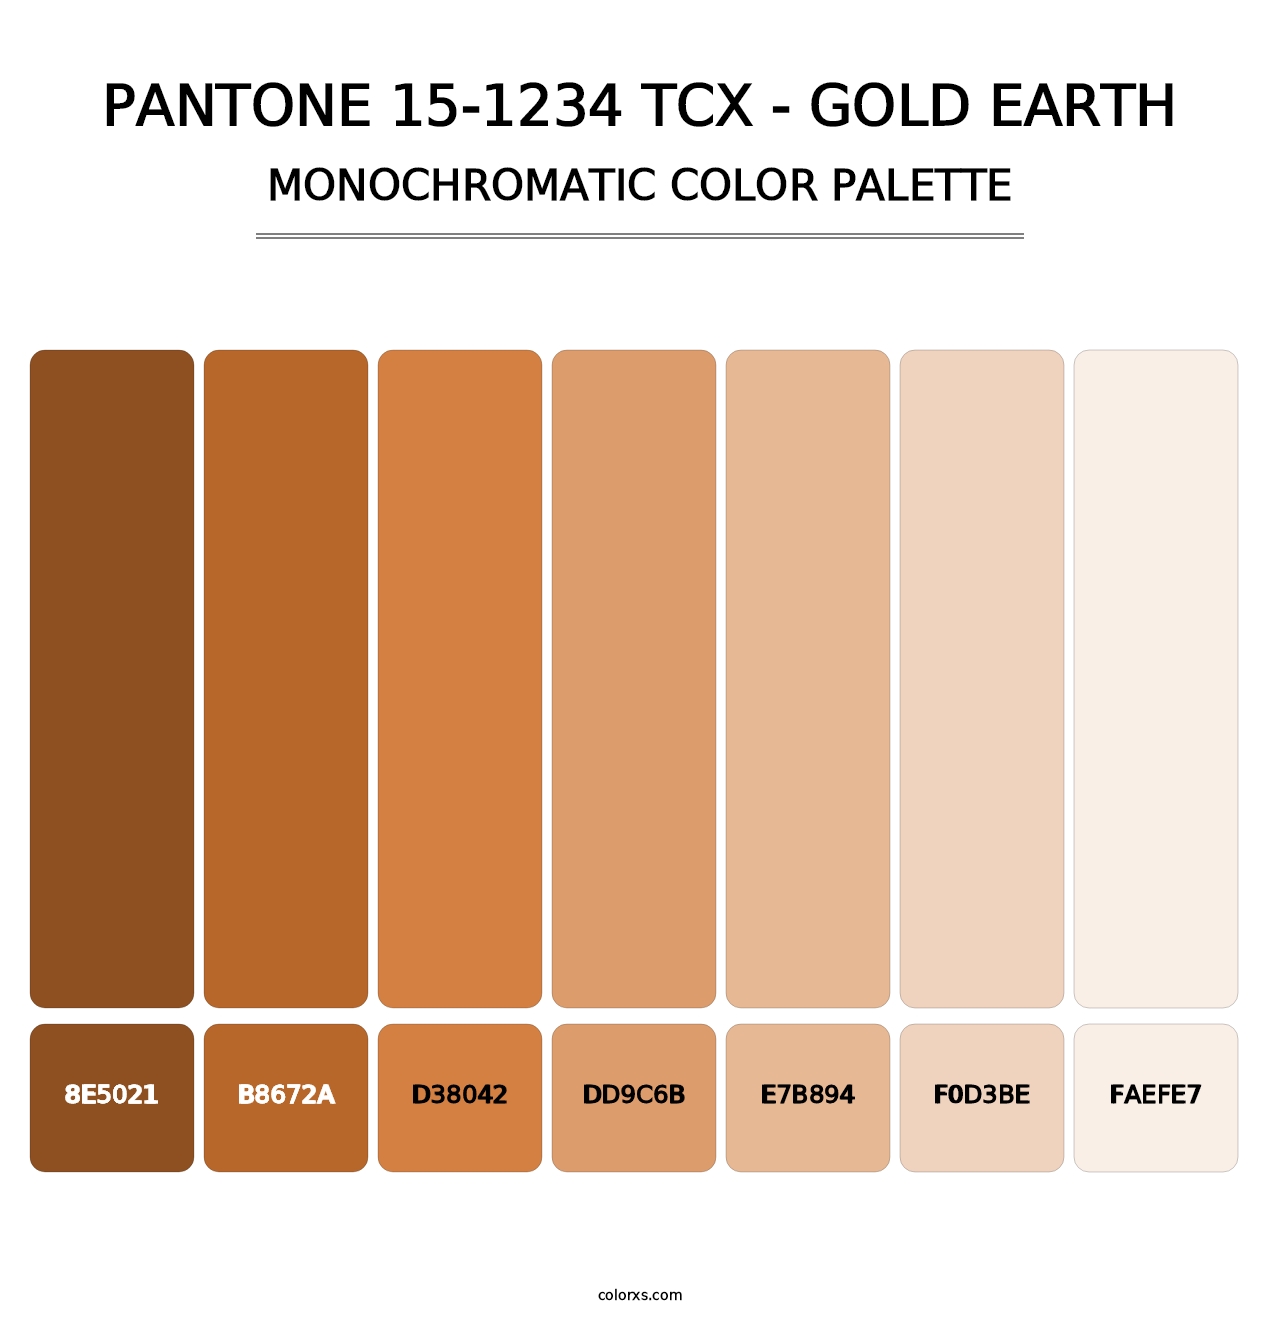 PANTONE 15-1234 TCX - Gold Earth - Monochromatic Color Palette